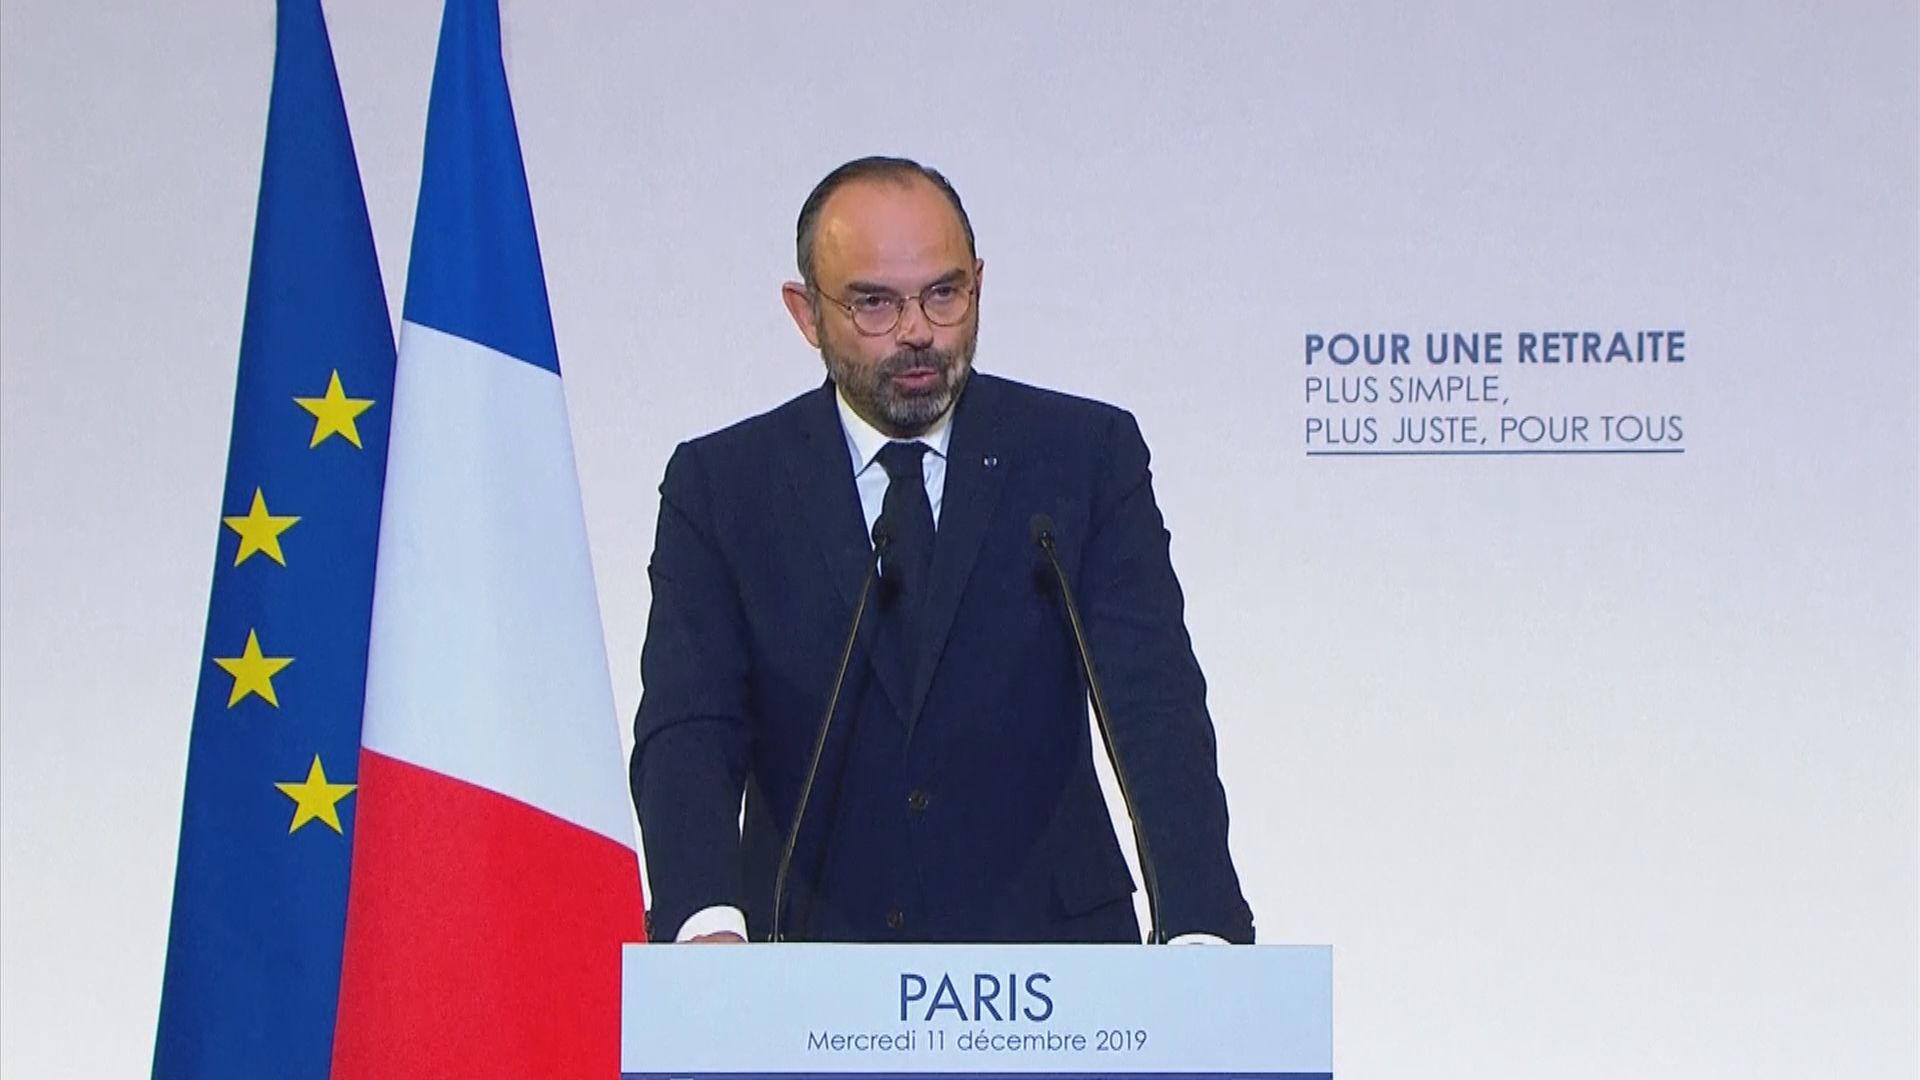 法國總理公布退休金改革細節